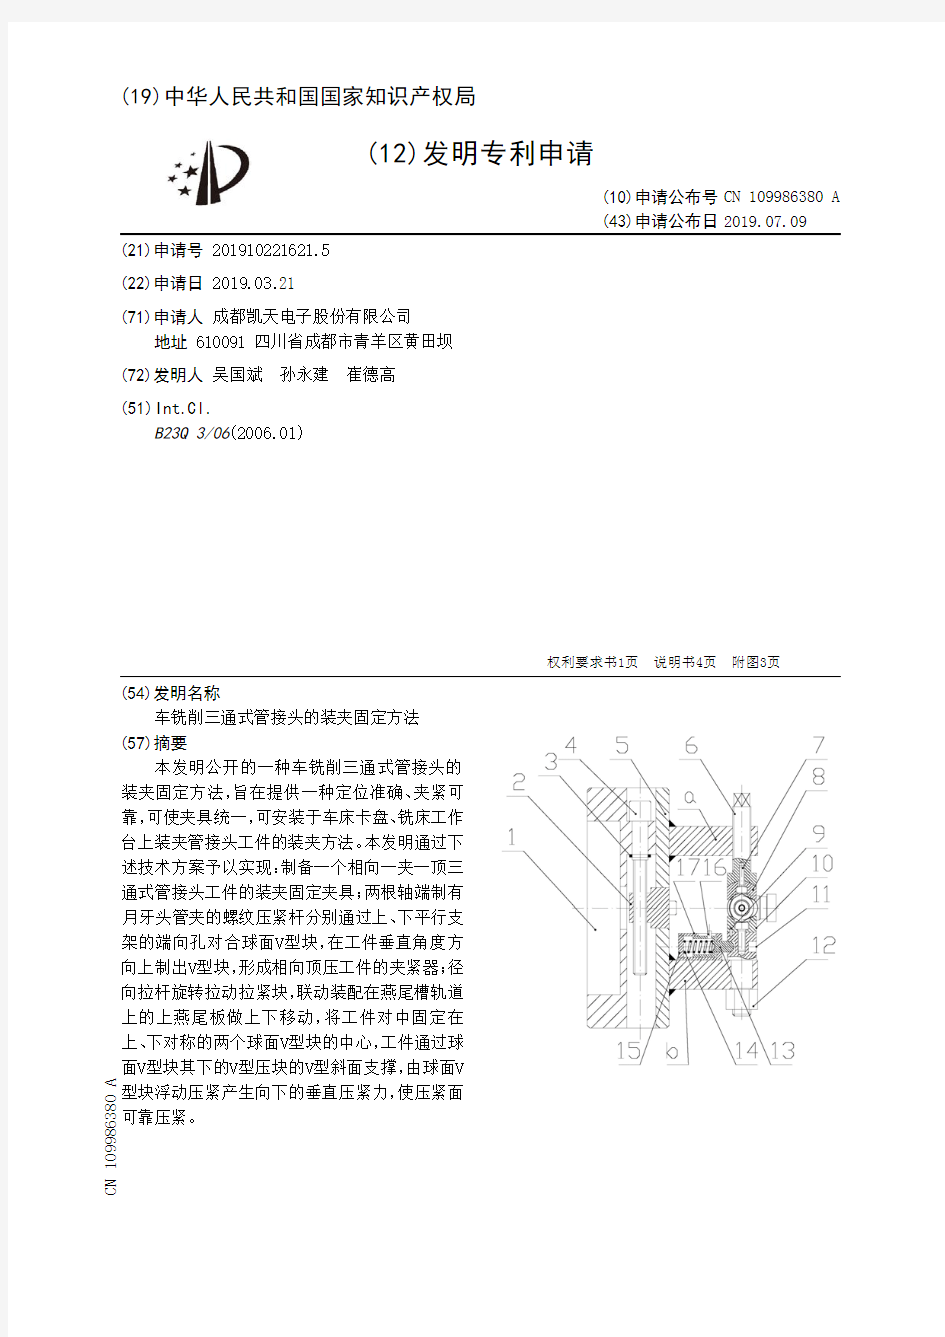 【CN109986380A】车铣削三通式管接头的装夹固定方法【专利】